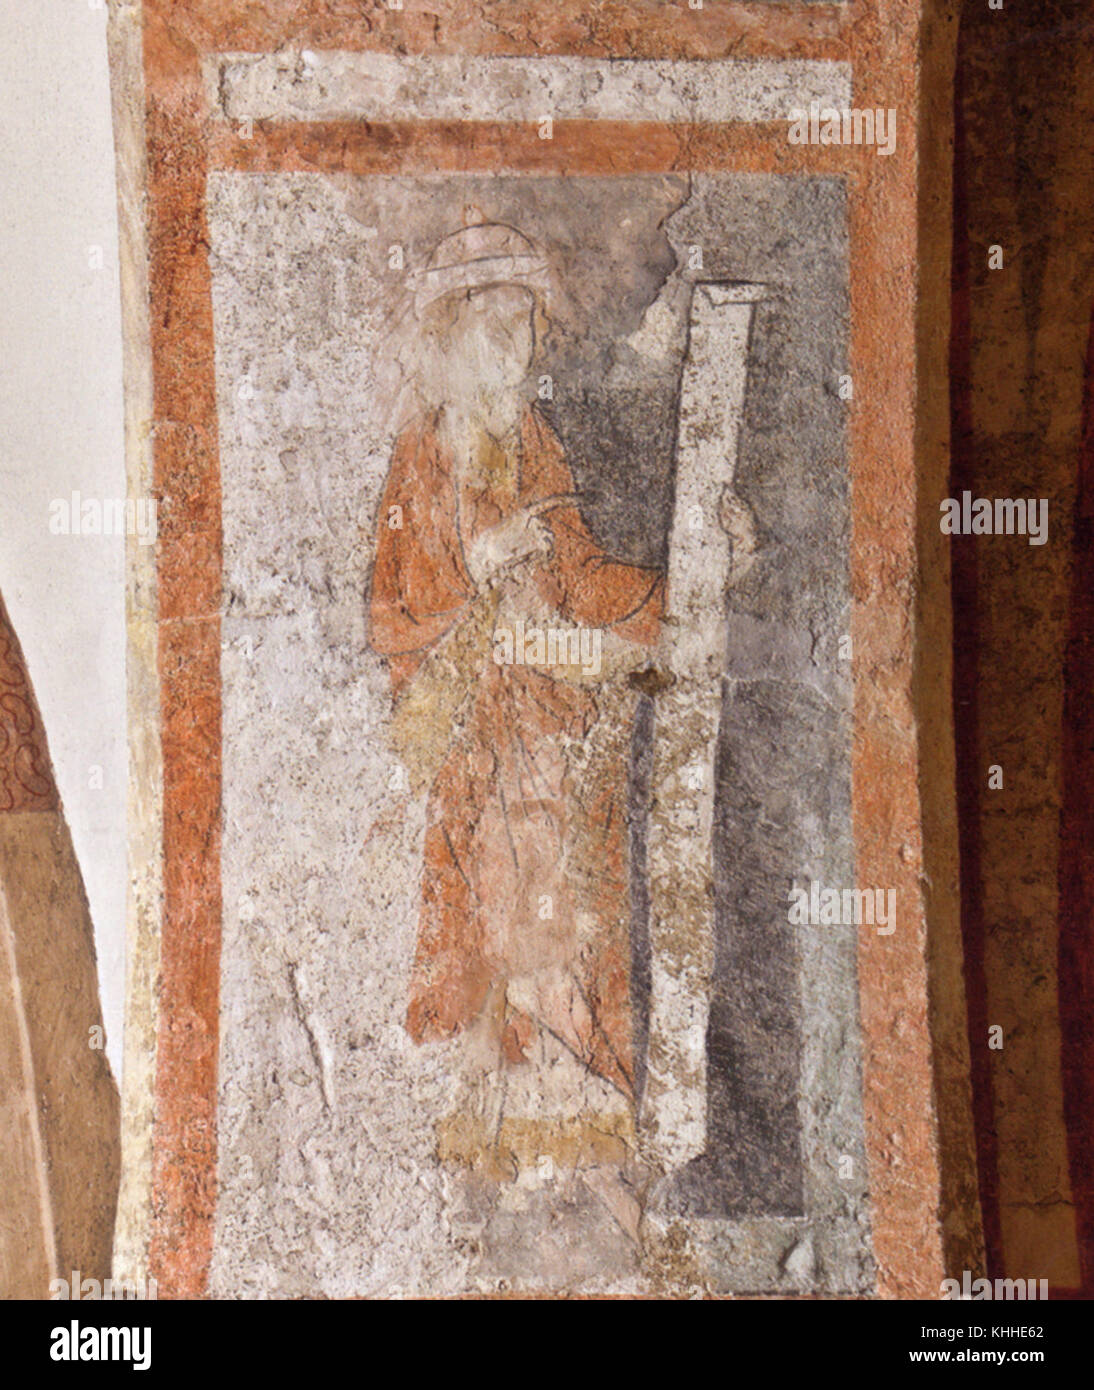 Kirche Altlichtenwarth Freske, Prophet mit Spruchband, Sauer 2014, 66 (Foto Michael Oberer) Stock Photo